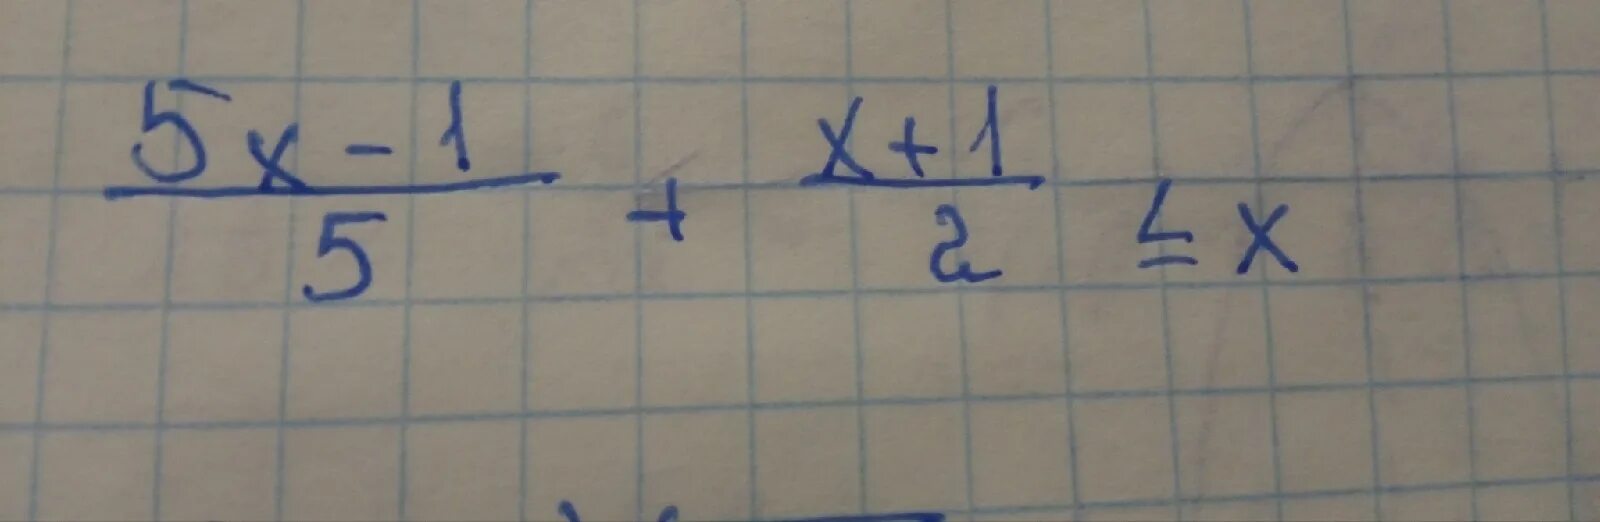 1 6 x больше или равно 0. Х больше или равен 3. 3х больше или равно 21. 7-3х больше или равно 21.